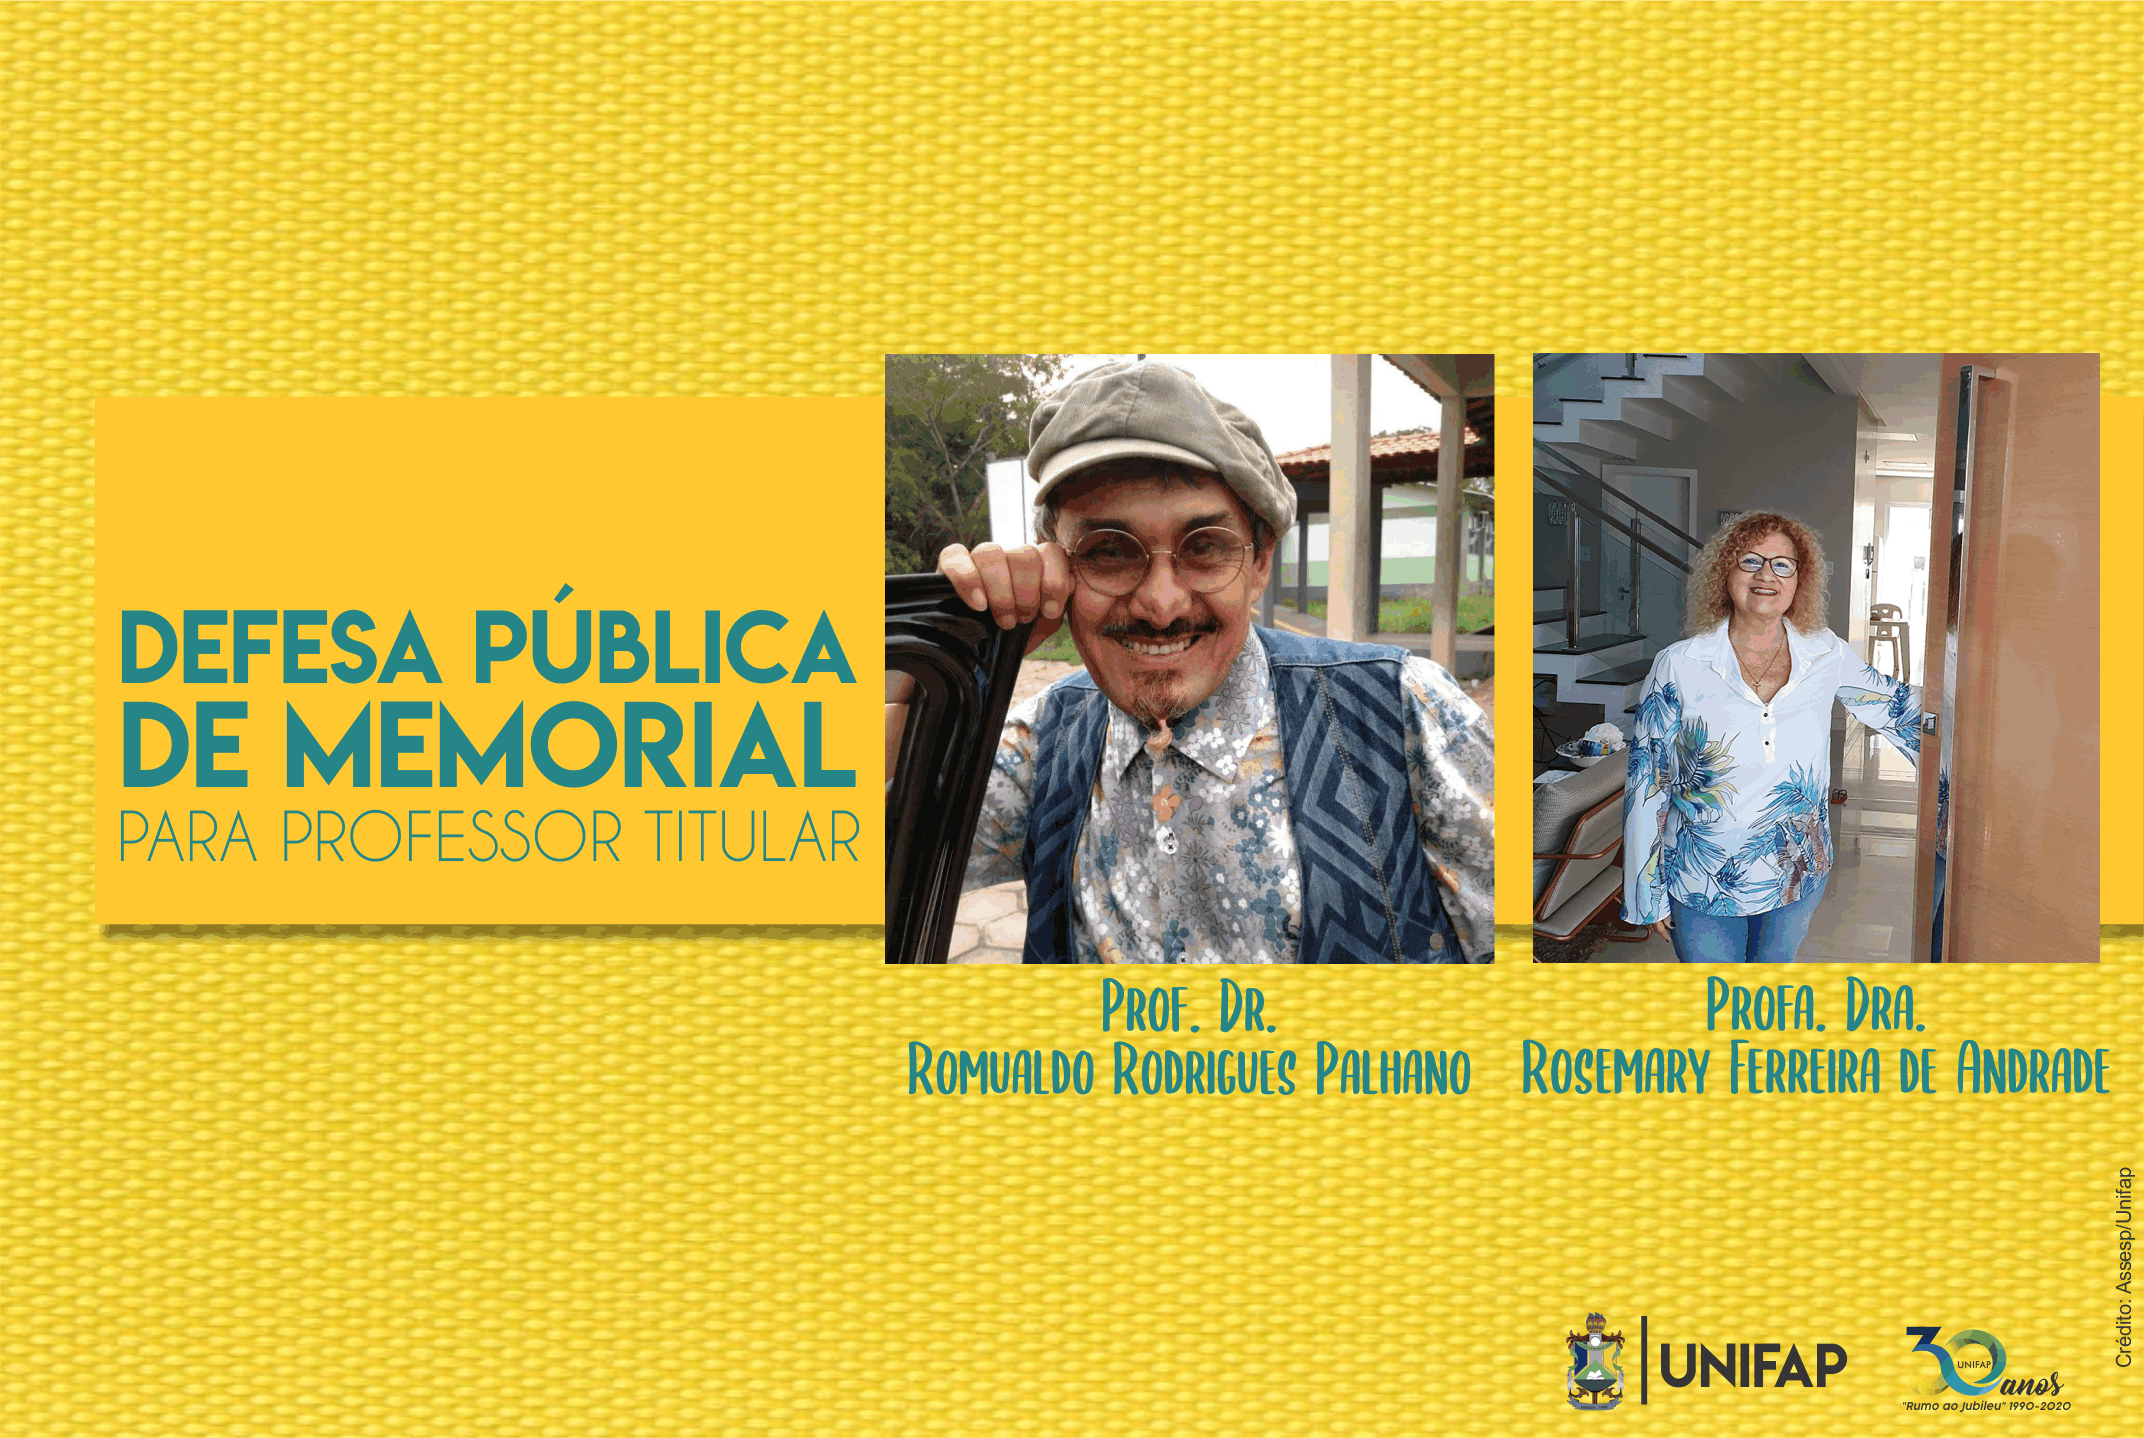 UNIFAP realiza defesa pública de memorial para Professor Titular